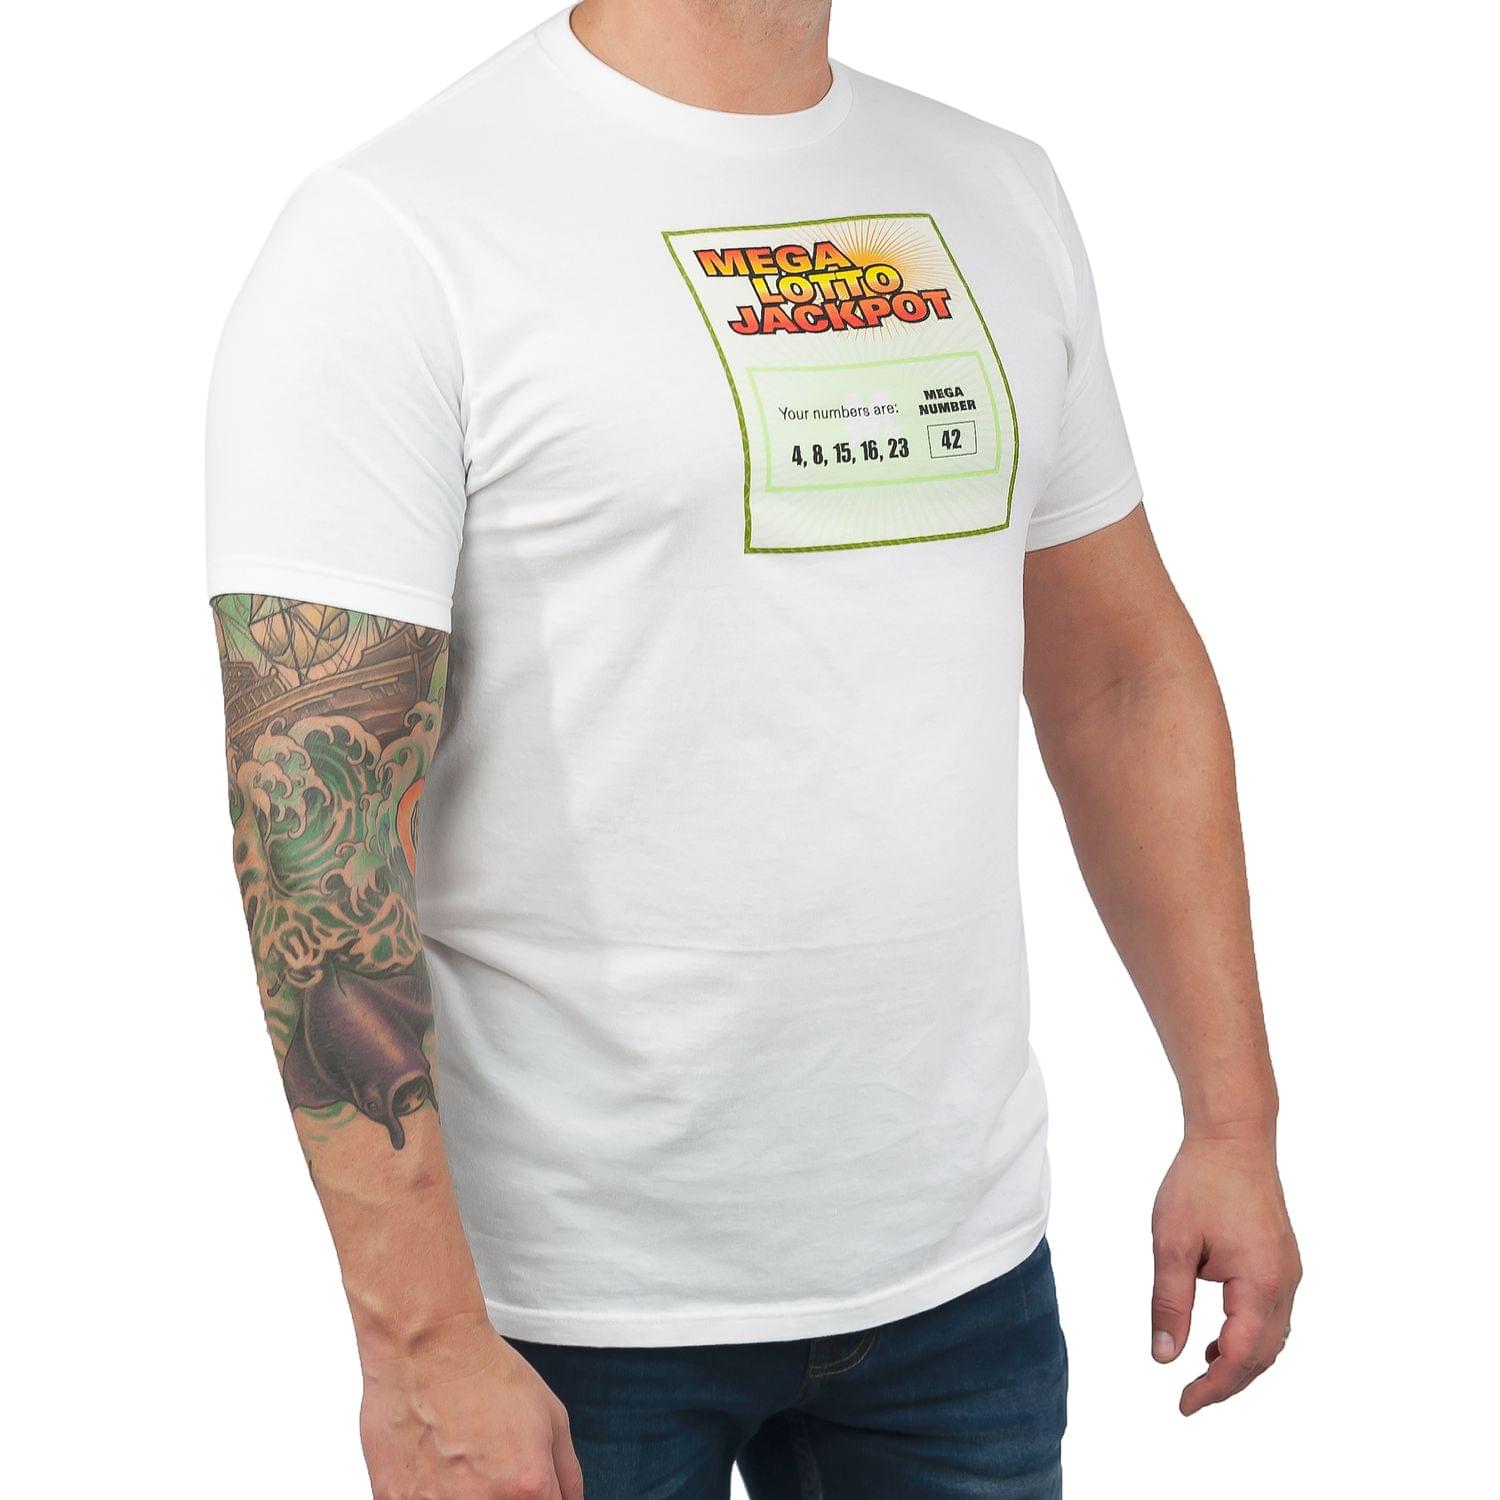 Lost "Mega Lotto Jackpot" Men's White T-Shirt